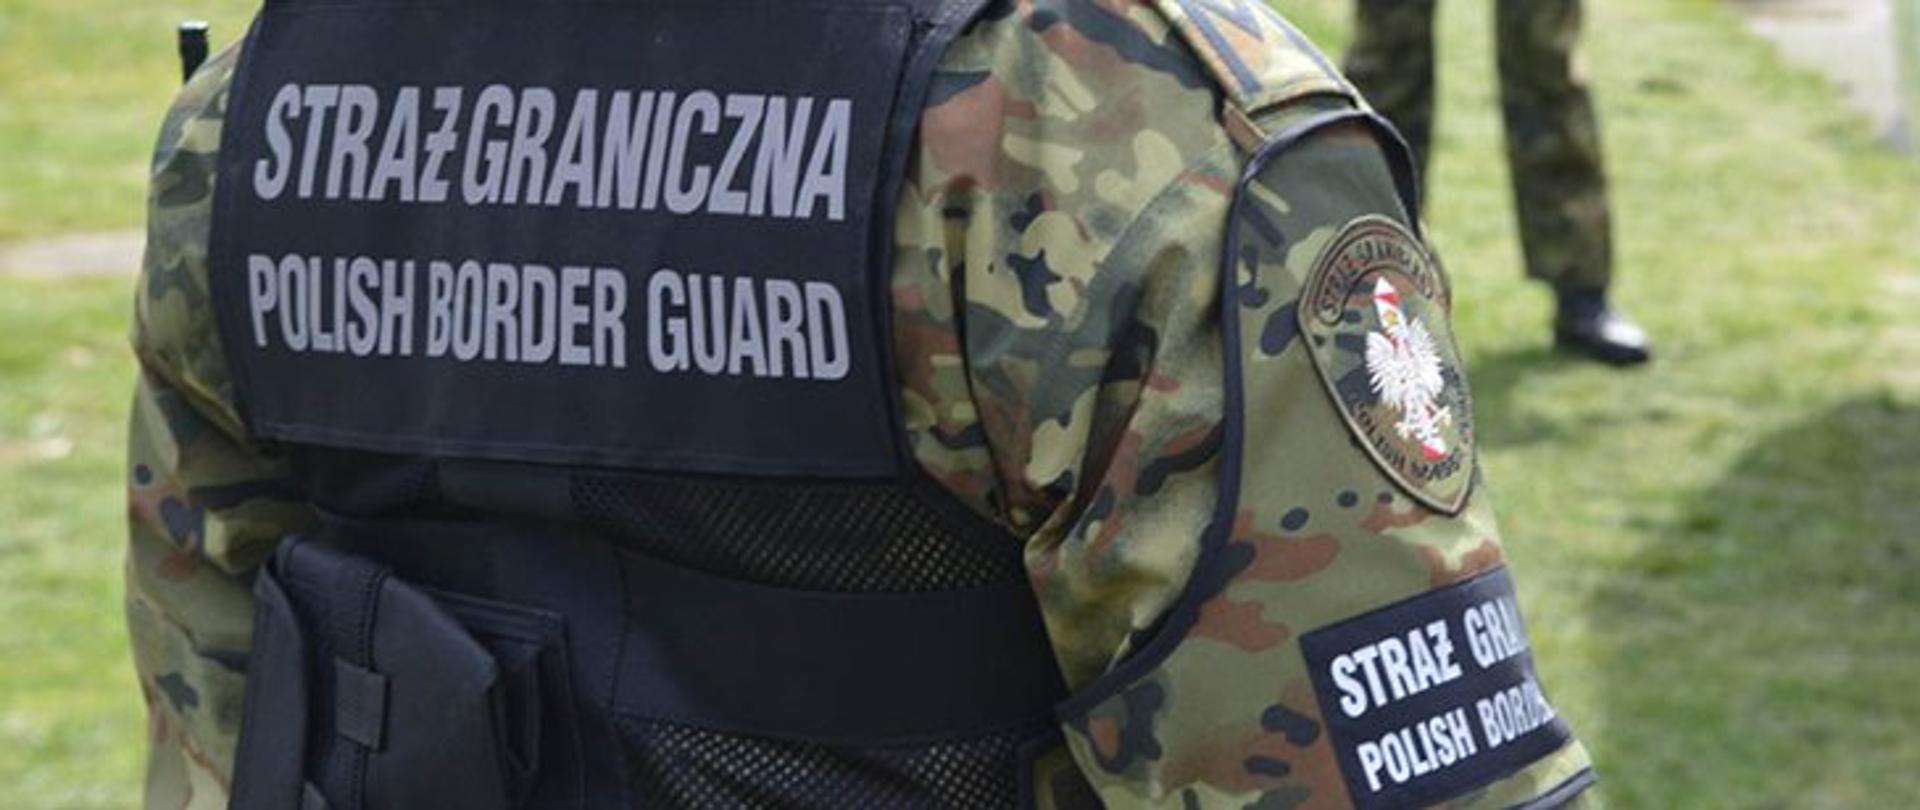 Polish border guard